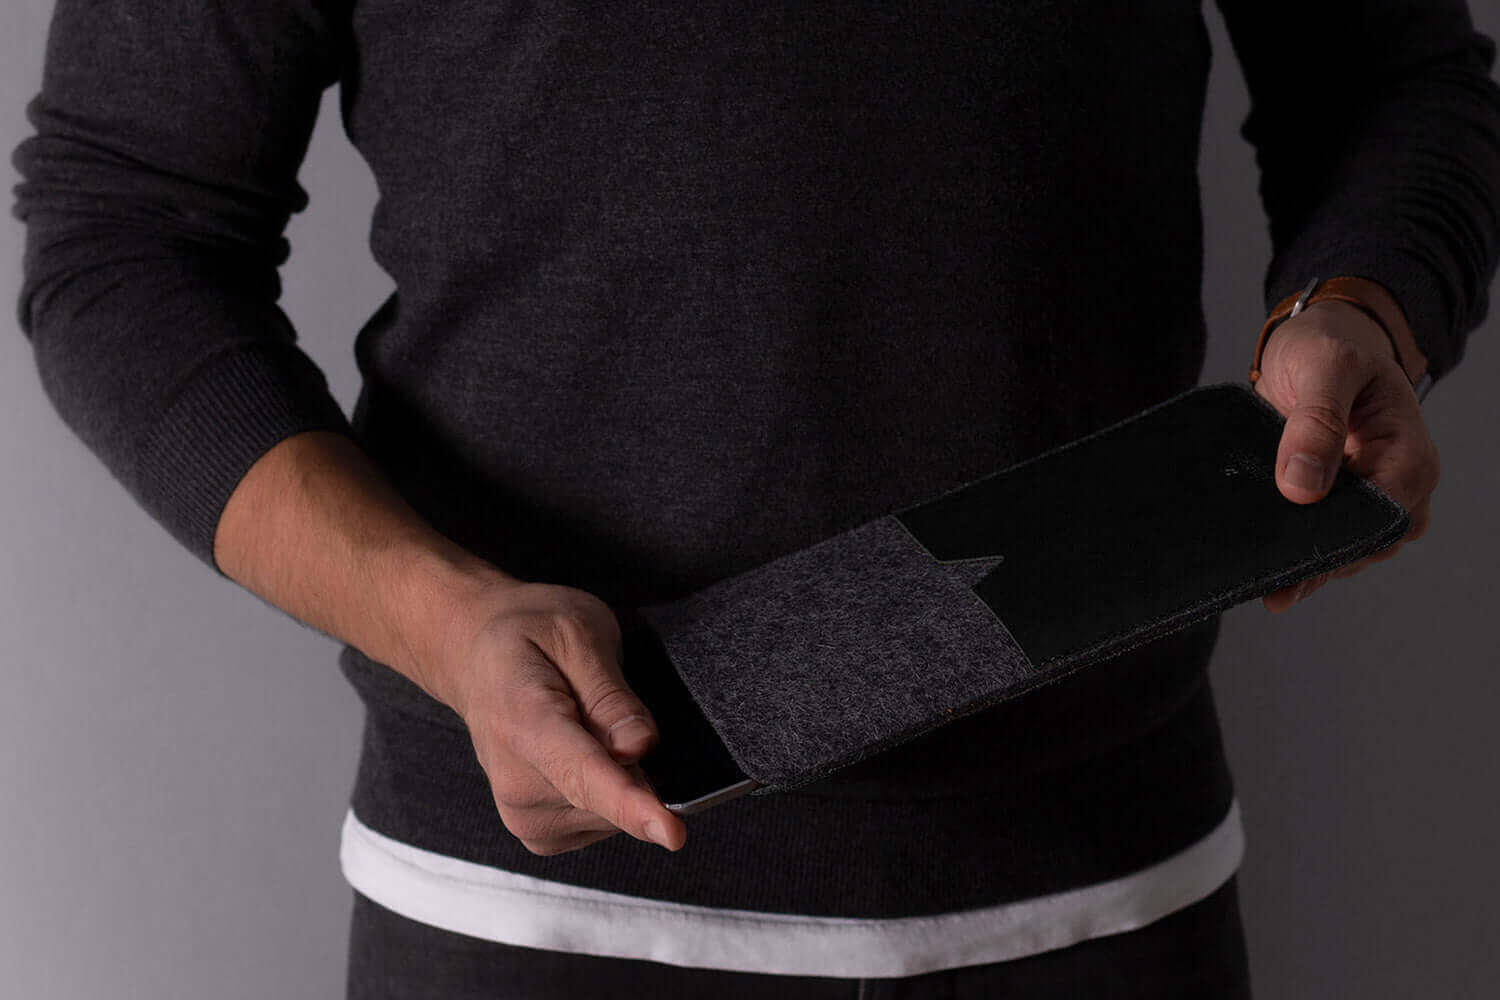 Classic – Étui en cuir pour iPad et Kindle Noir